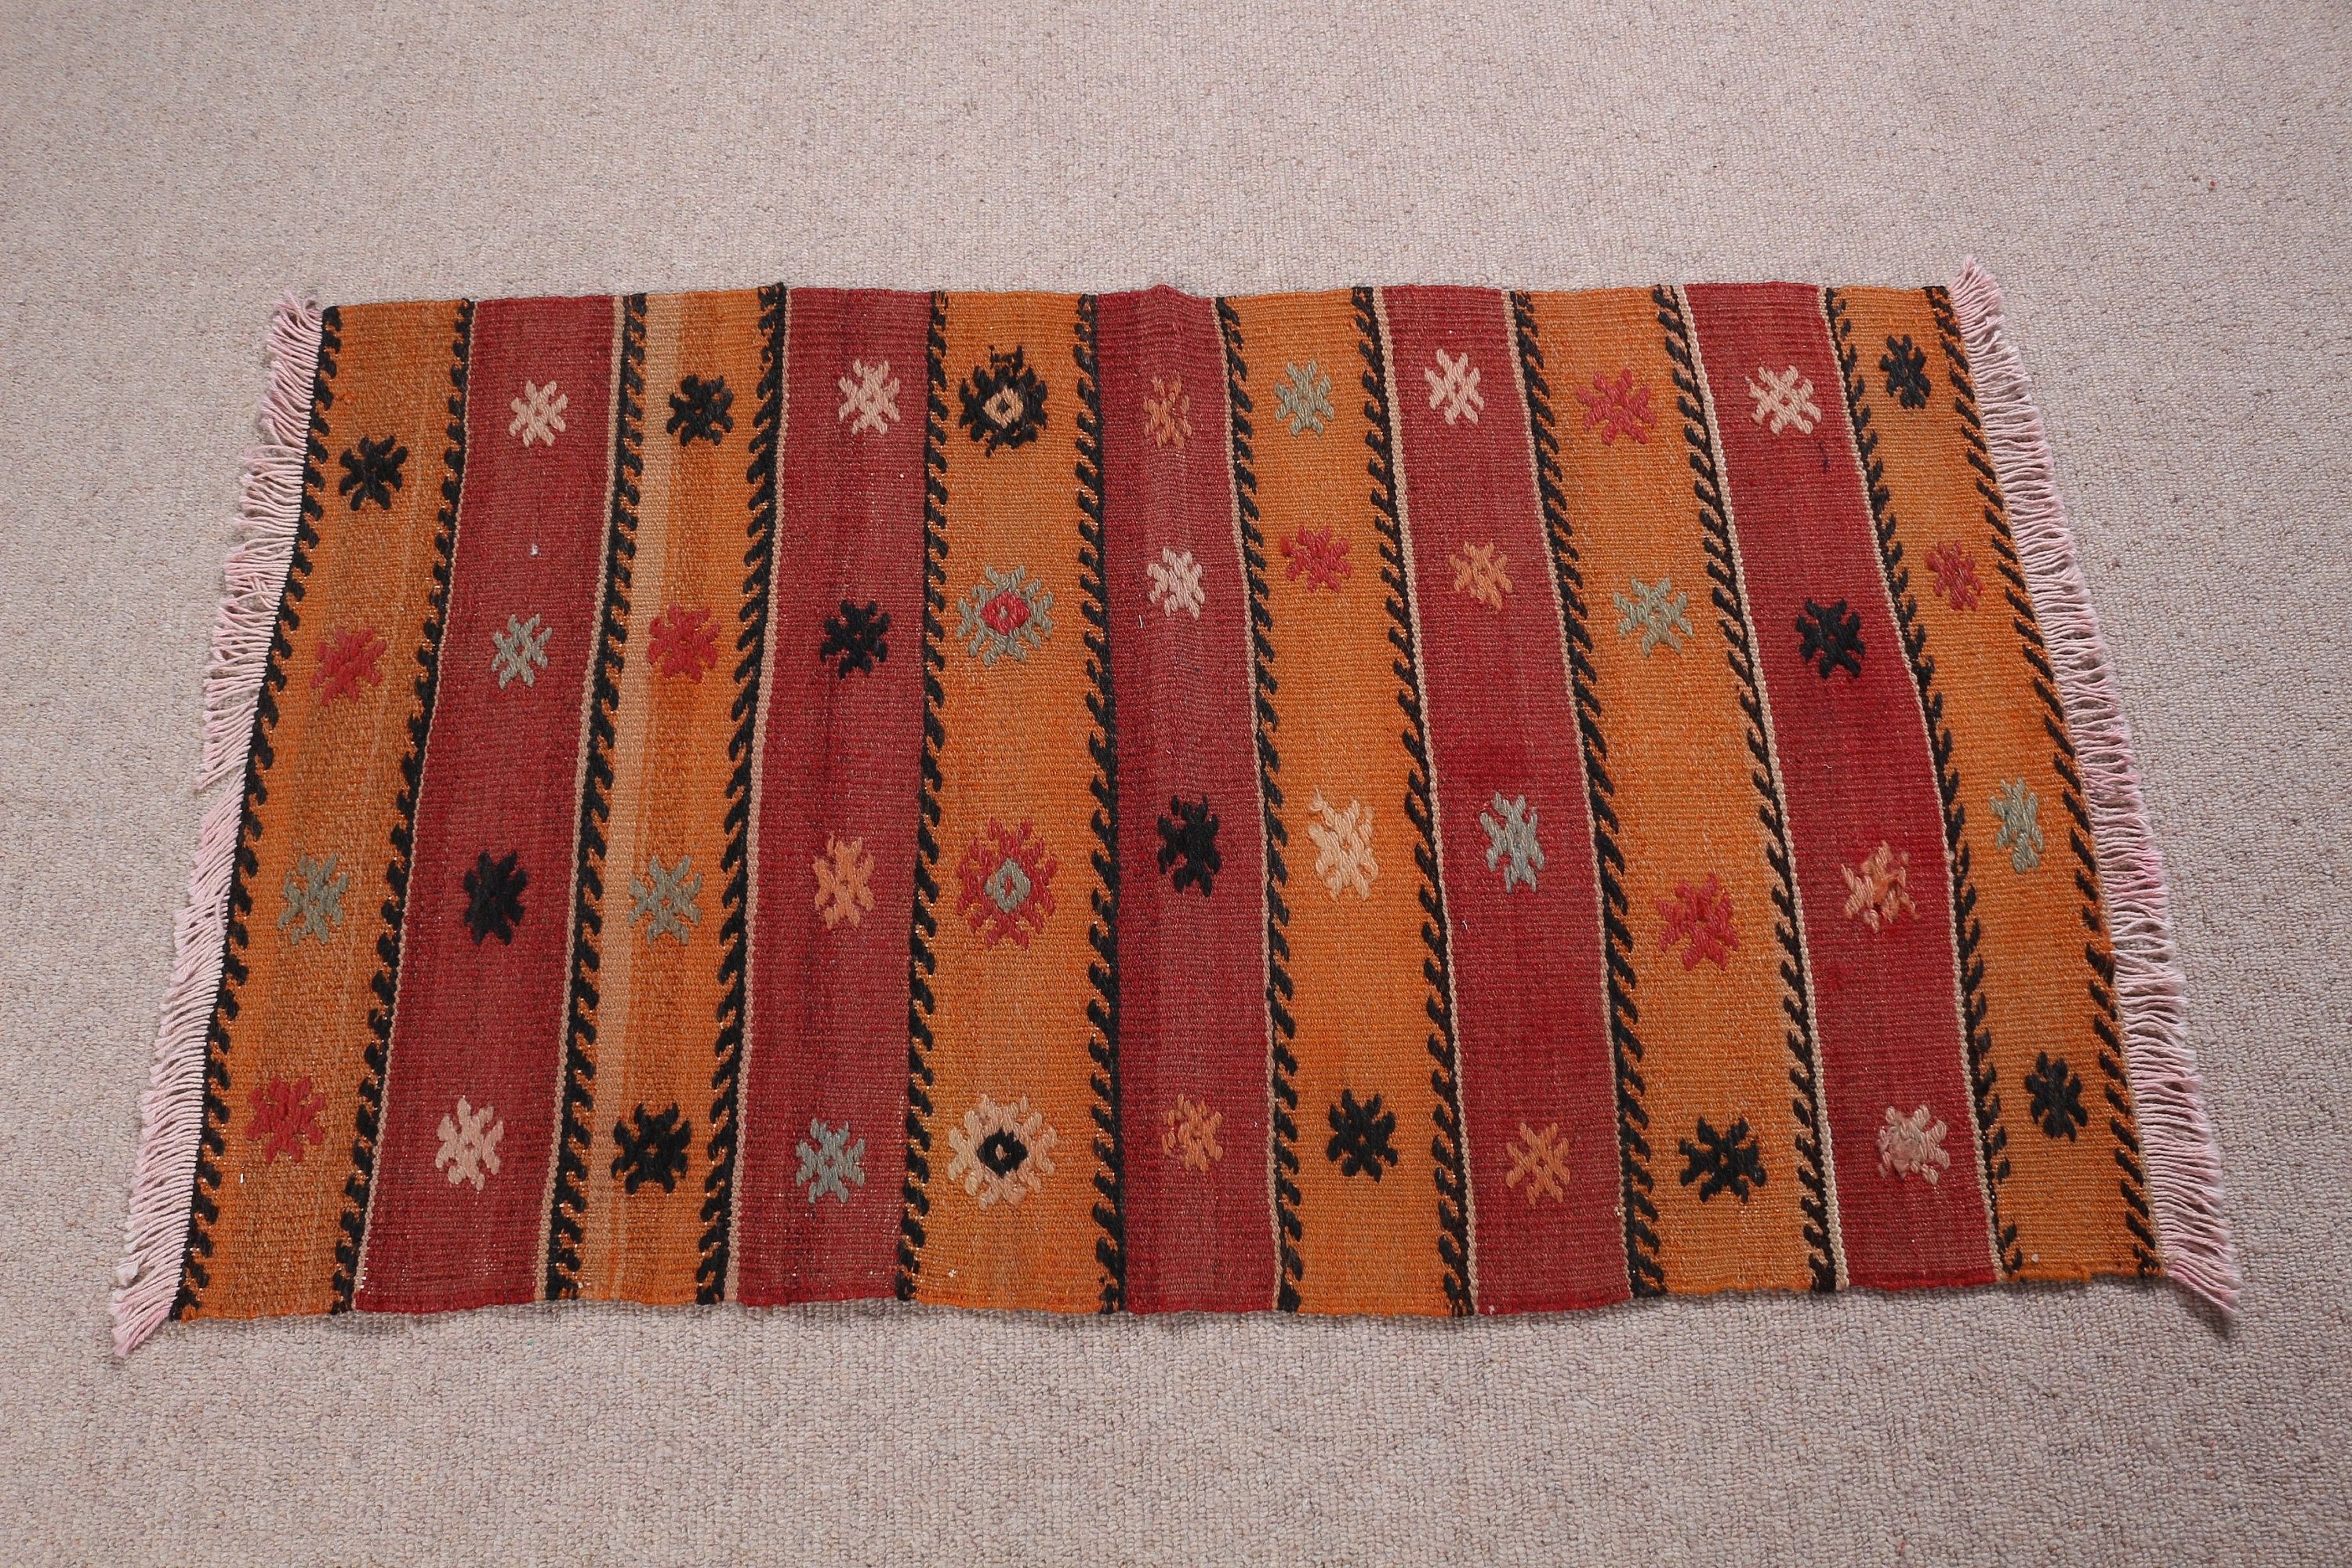 Brown Cool Rug, Vintage Rug, Anatolian Rug, Bathroom Rug, 1.8x3.1 ft Small Rug, Wall Hanging Rug, Turkish Rug, Moroccan Rugs, Kilim